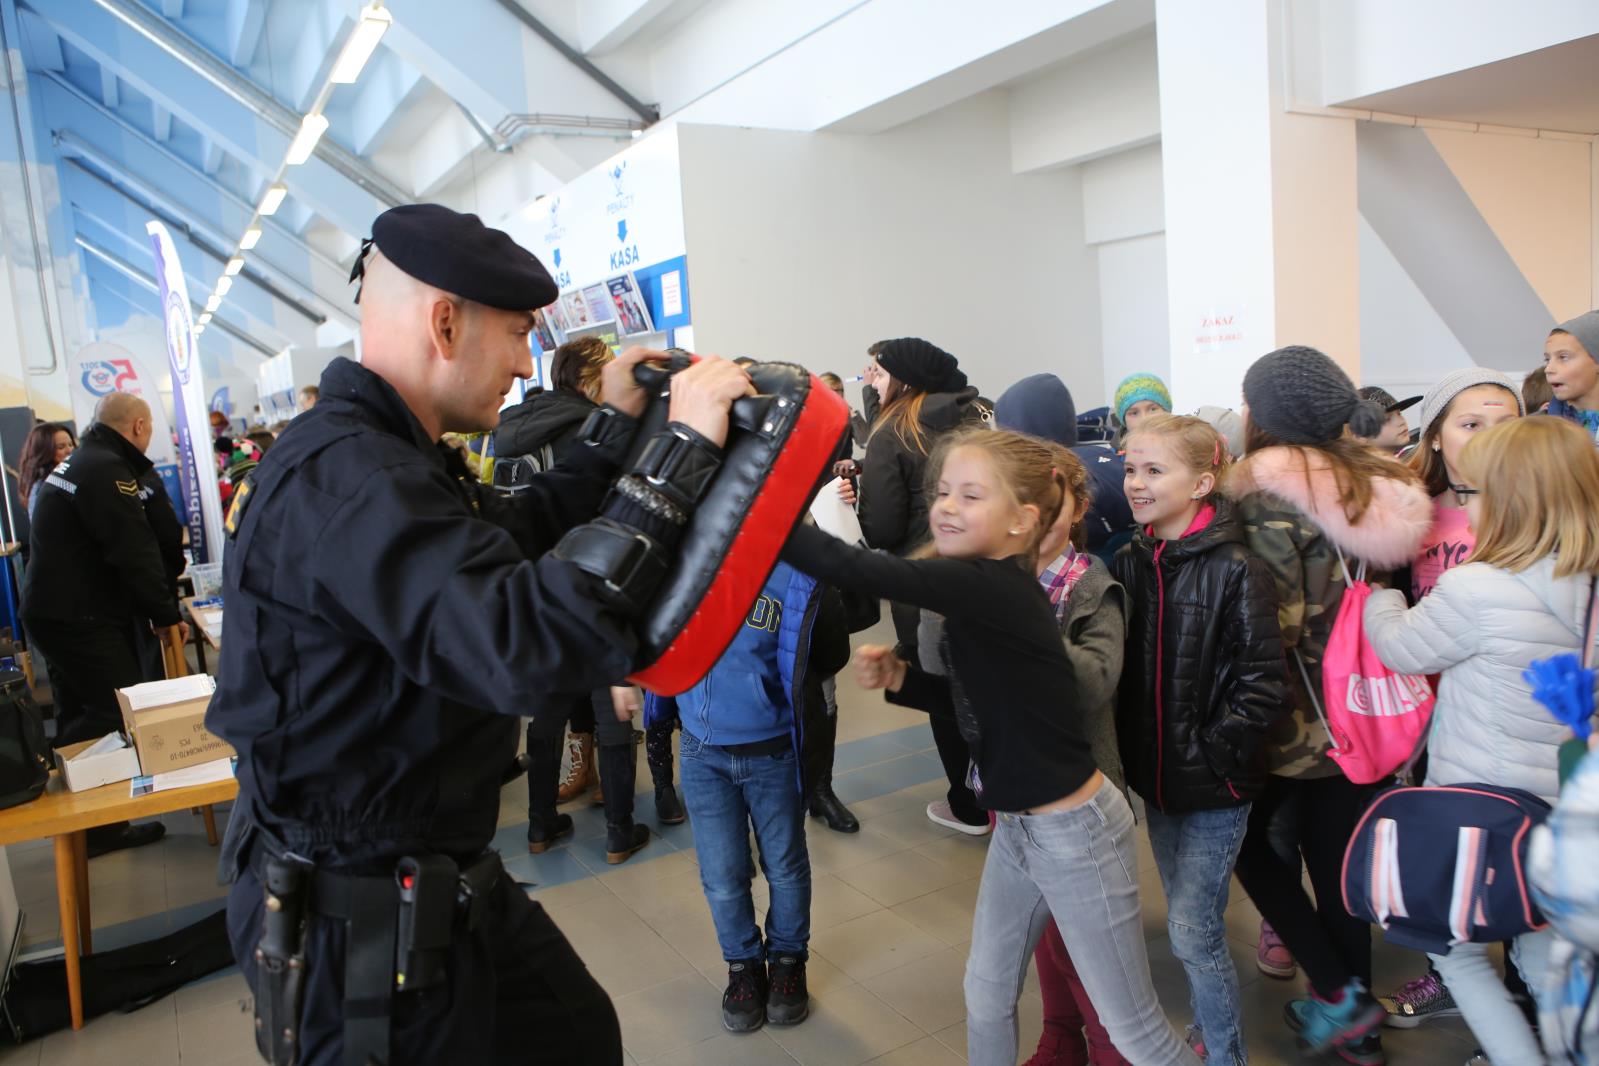 Den s Policií České republiky a Mistrovství UNITOP ledního hokeje